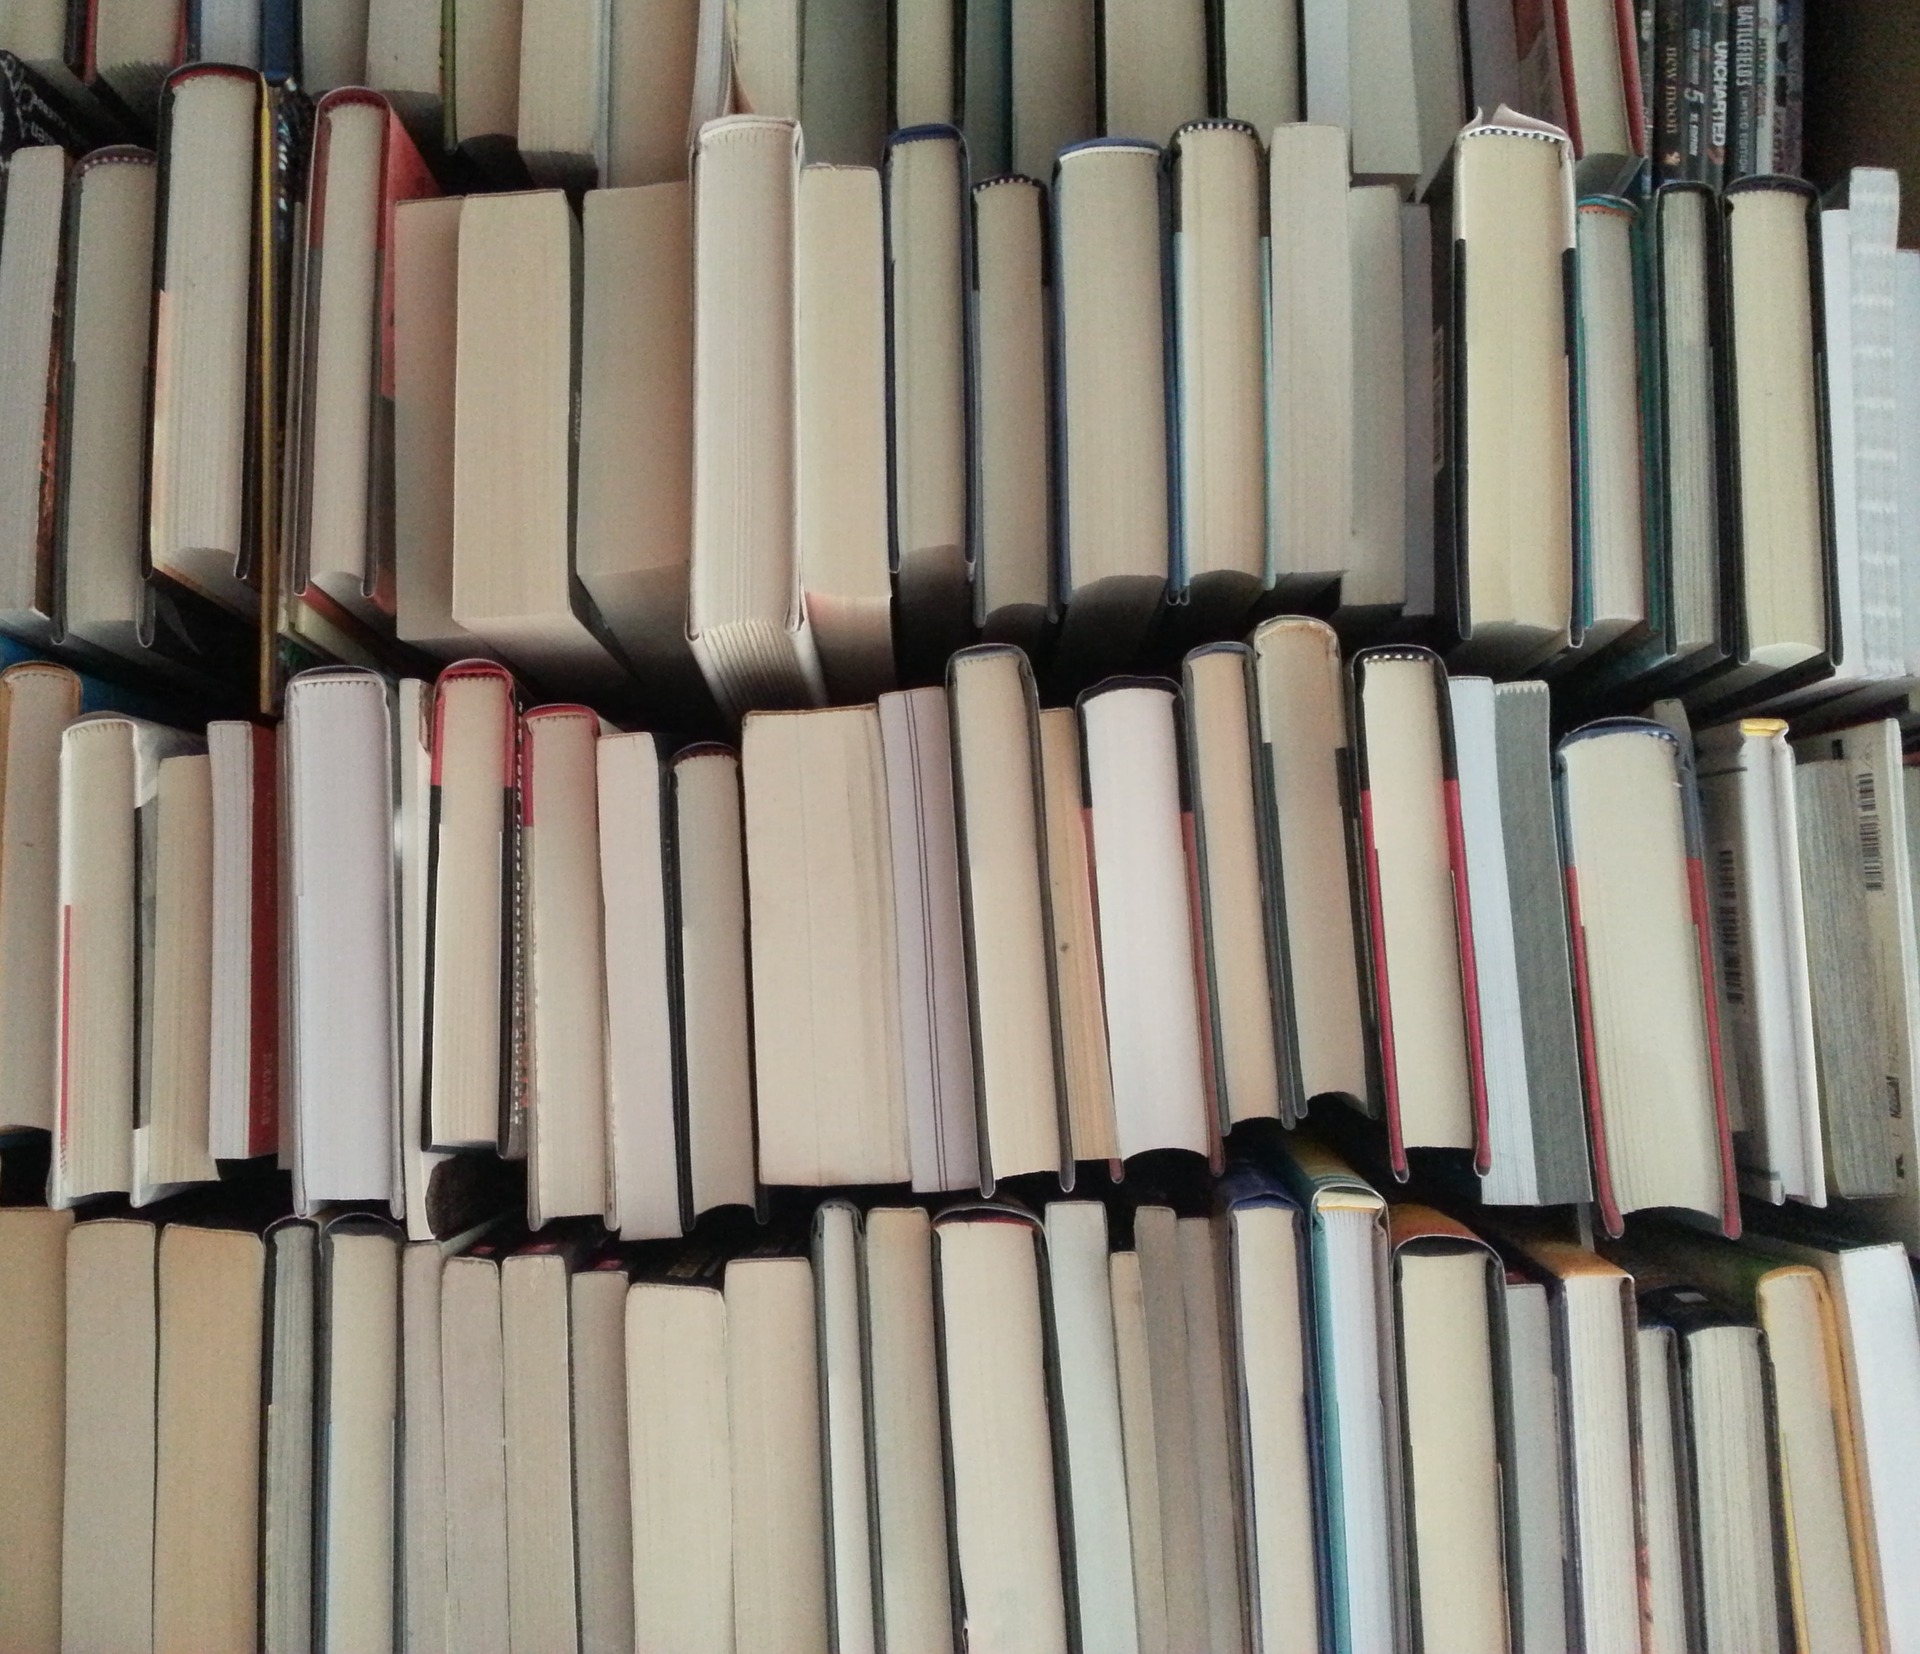 There are lots of books. Как красиво сложить книги на полке. Картинка - книга - сложенная. A lot of books. Как сложить книги на полке.